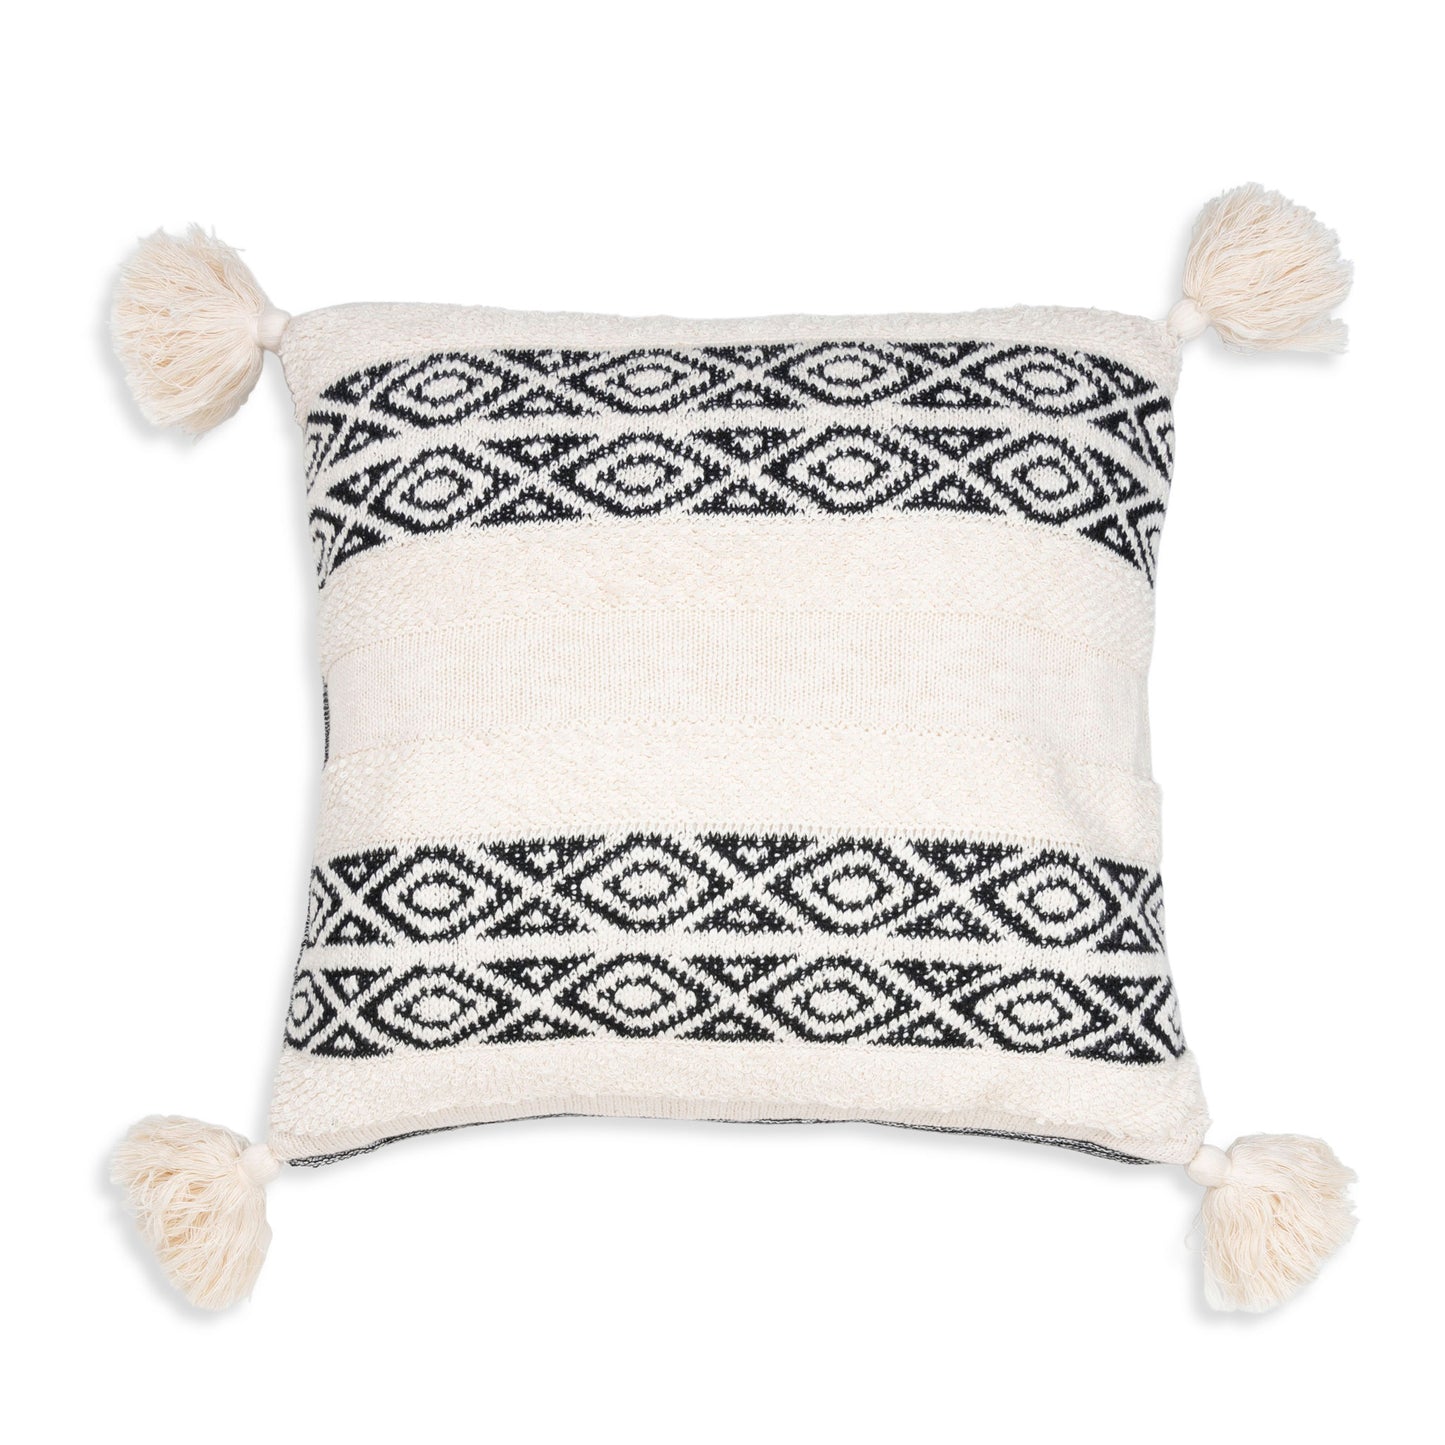 Necalli 18X18" Reversible Striped Cotton Throw Pillow